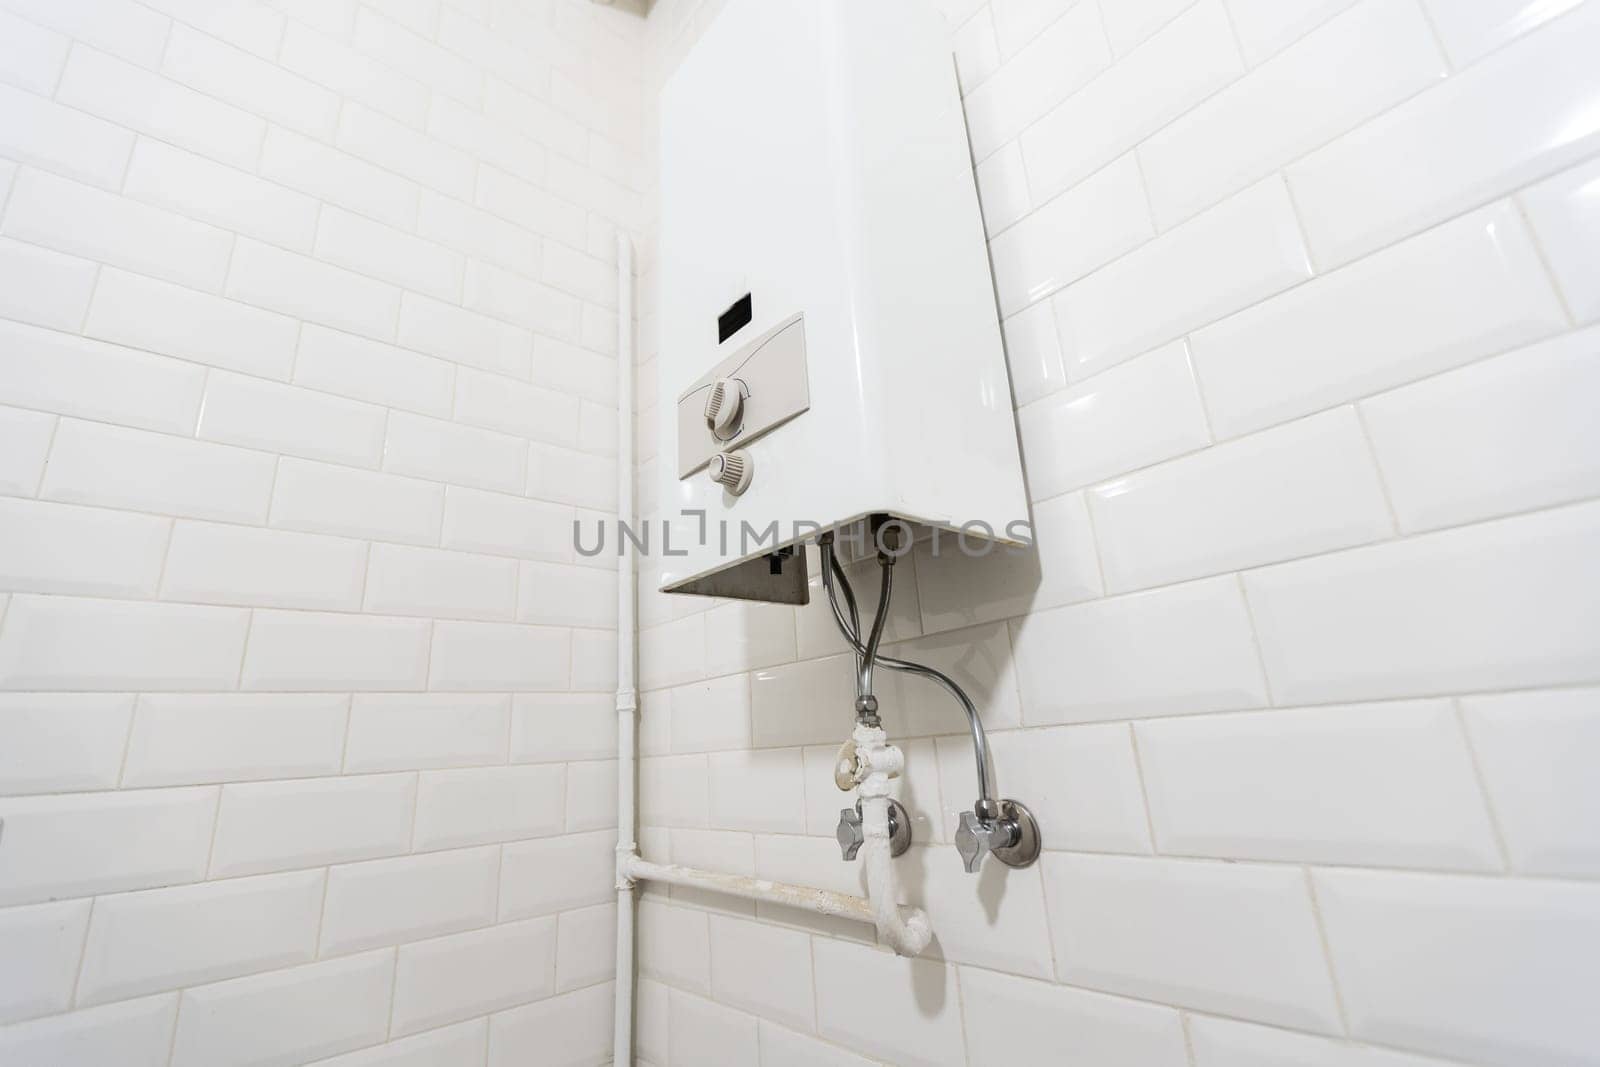 Broken Modern Water Gas Heater Next to Shower Cabin Inside Elegant Clean Bathroom Interior. by Andelov13